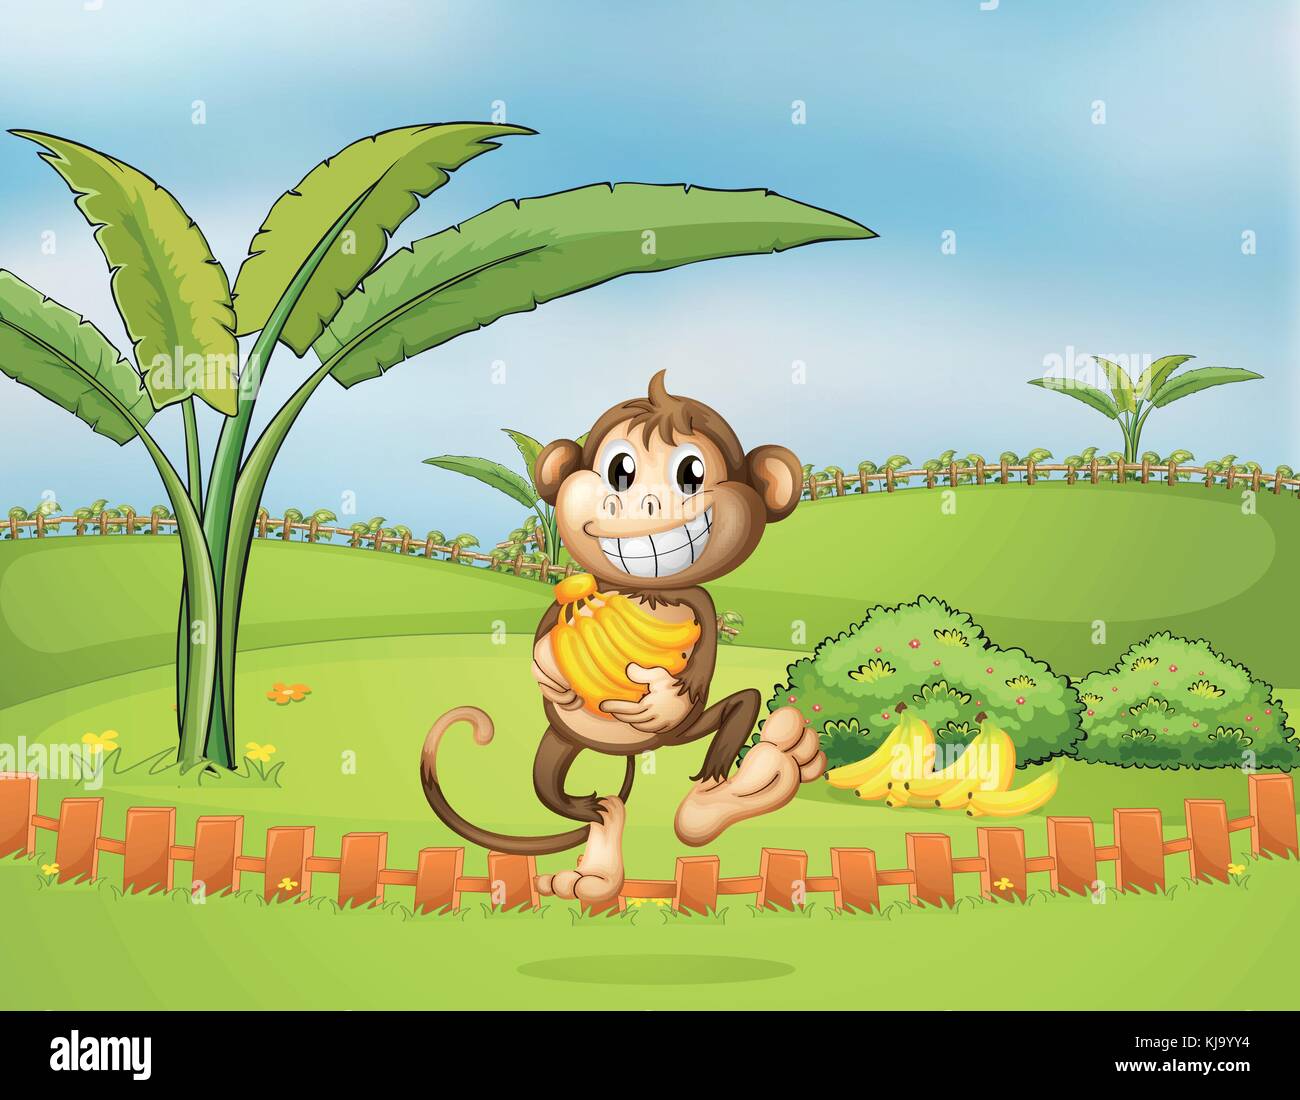 Ilustración de un mono huyendo con plátano Ilustración del Vector